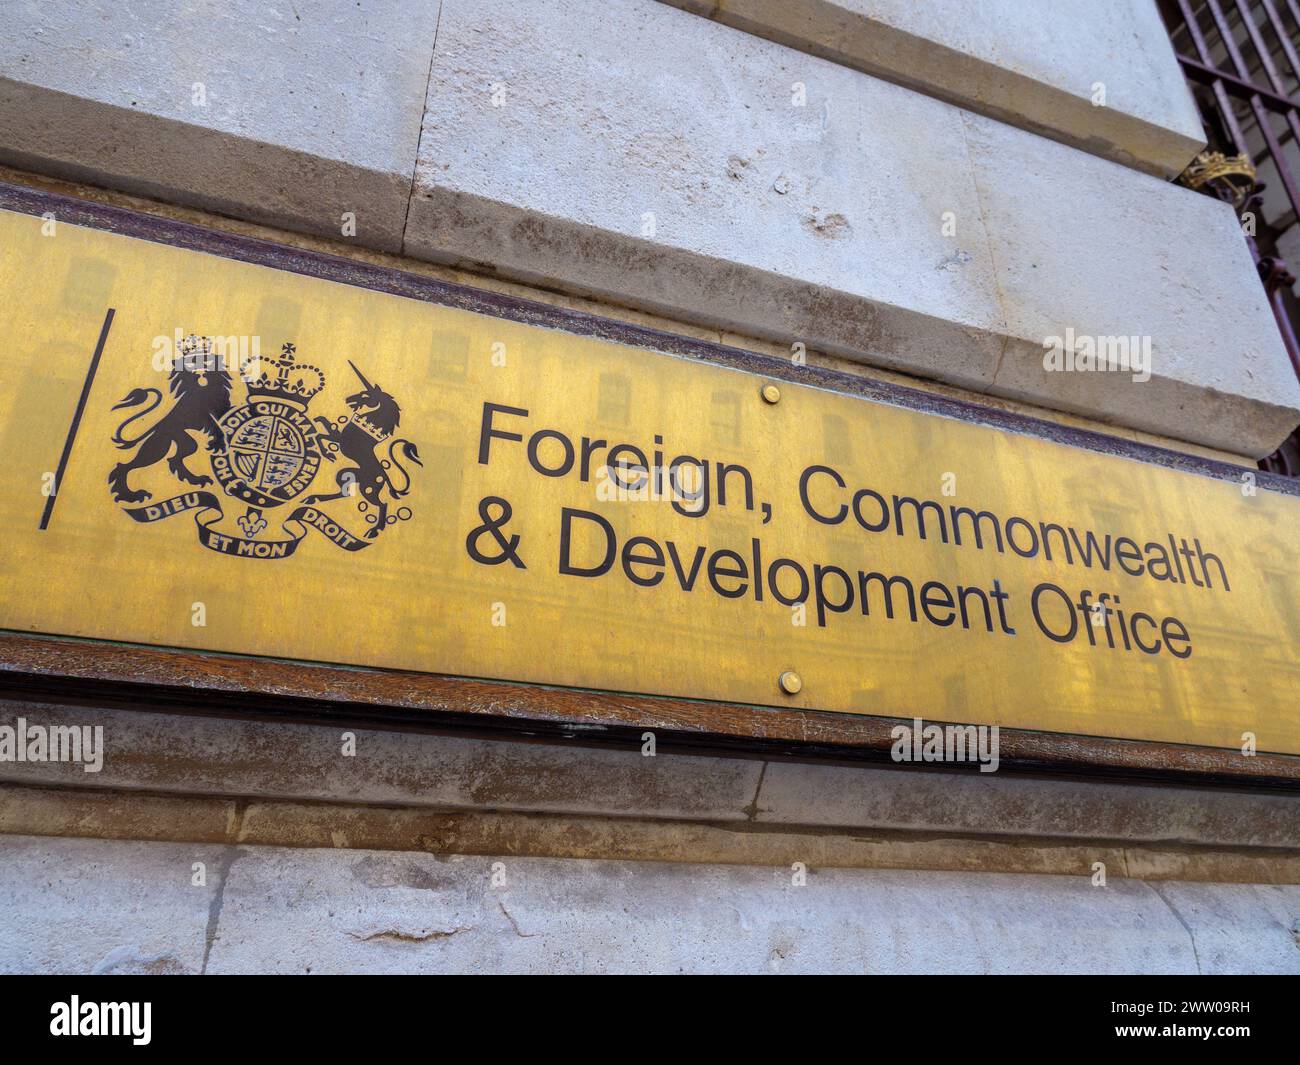 Panneau devant le bâtiment du Foreign, Commonwealth and Development Office sur Whitehall, Londres, Royaume-Uni Banque D'Images